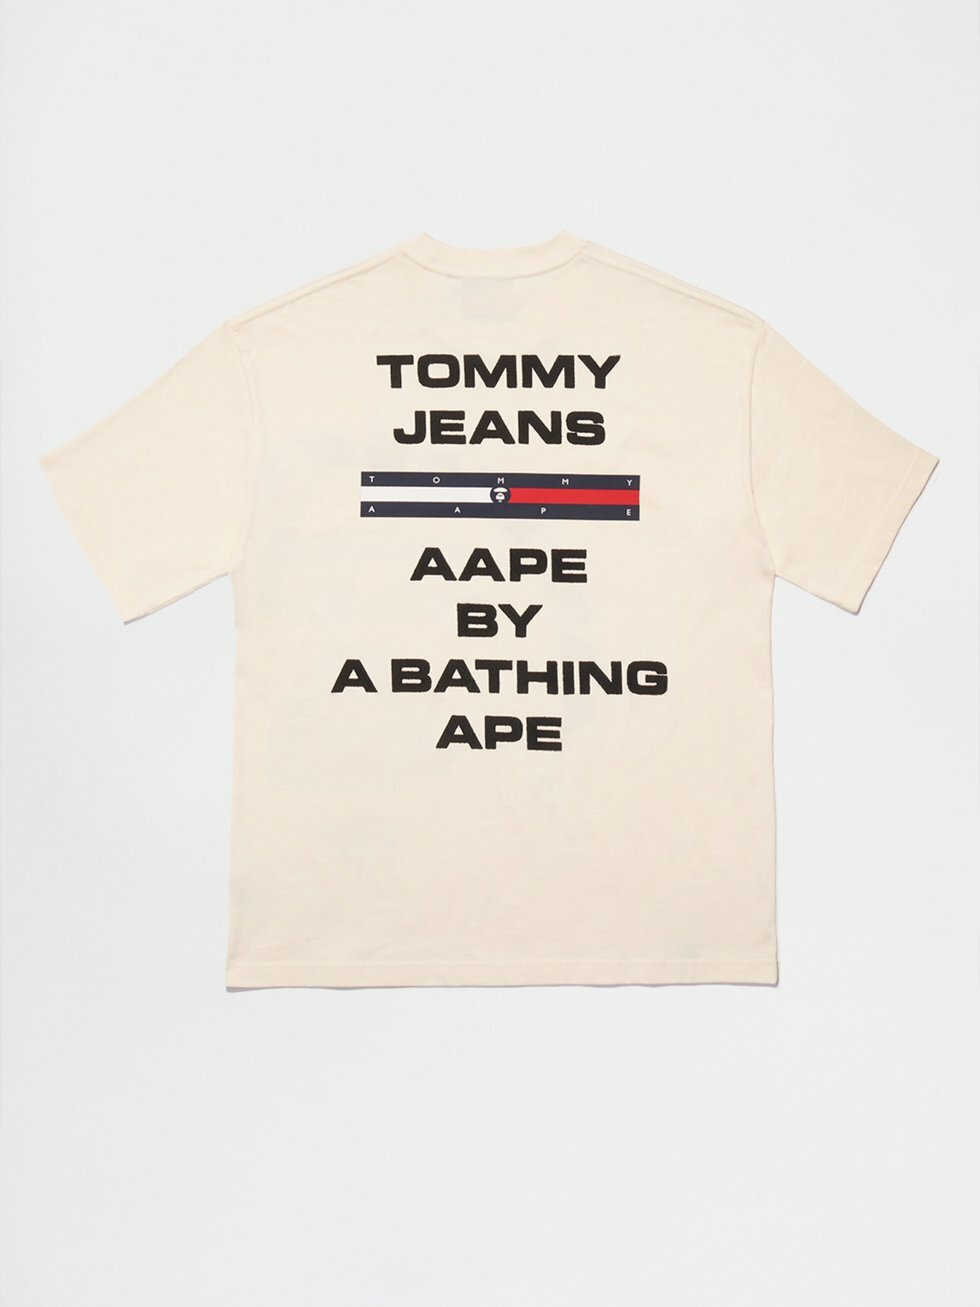 Tommy x AAPE - Bathing Ape går sammen med Hilfiger om endnu en kollektion